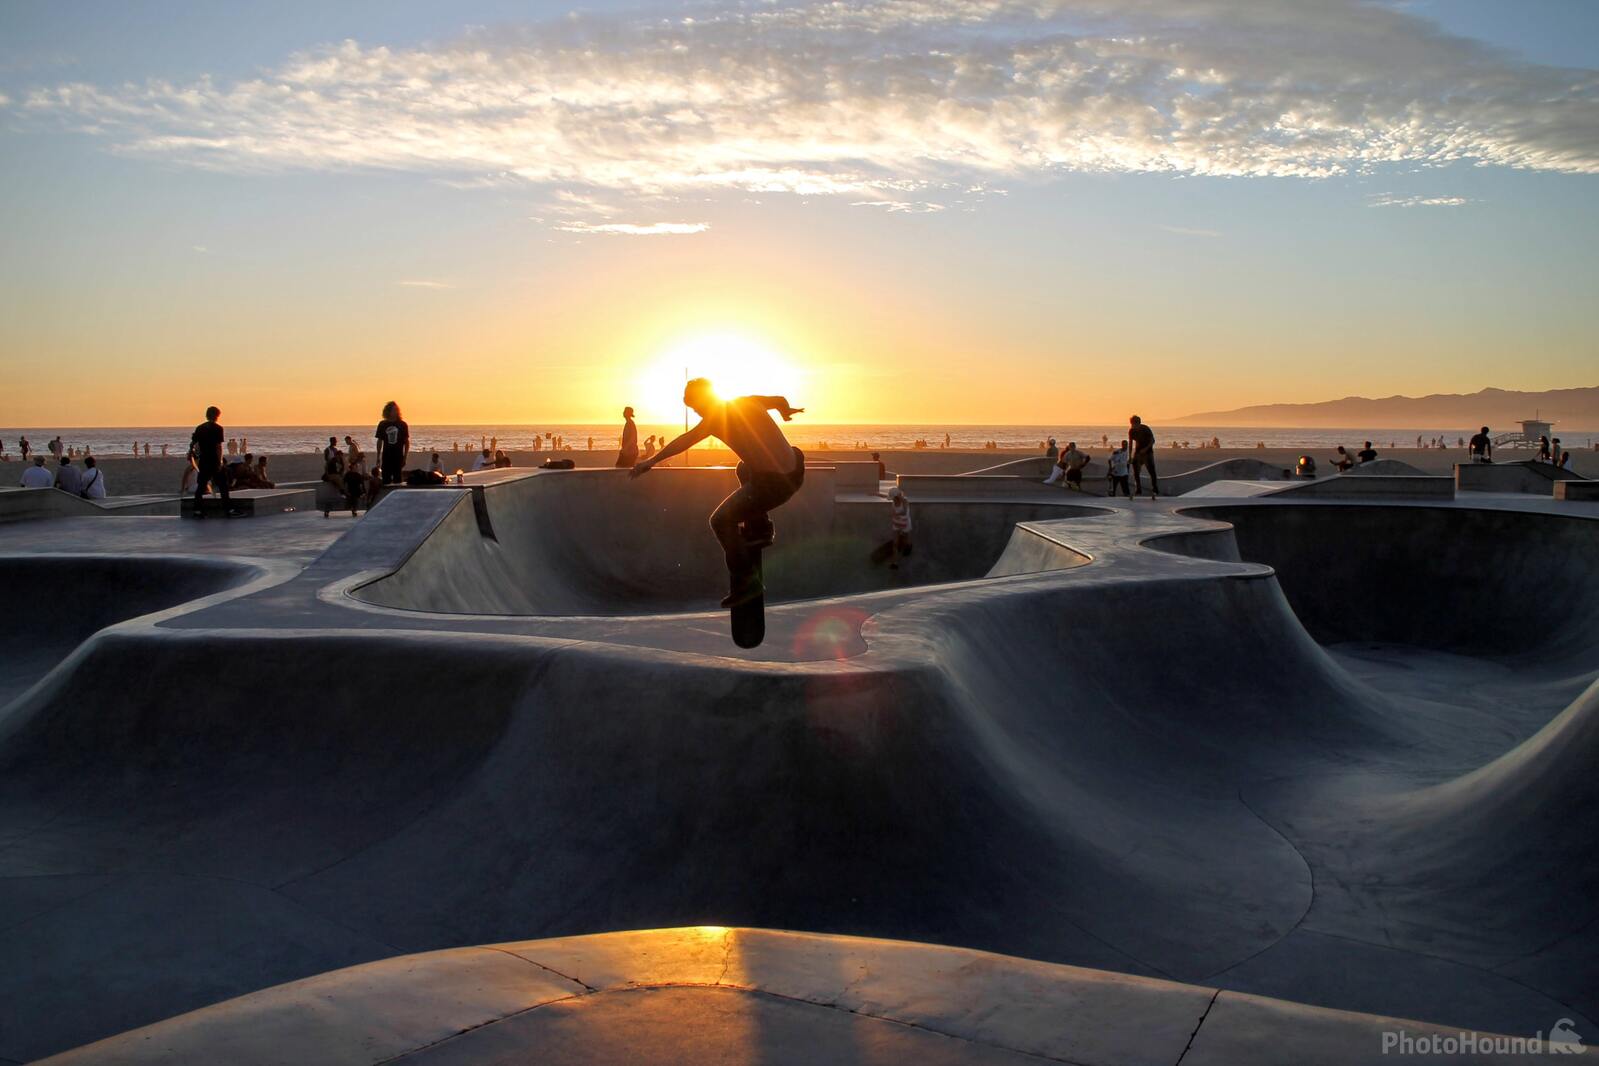 Image of Venice Beach Skatepark by Team PhotoHound